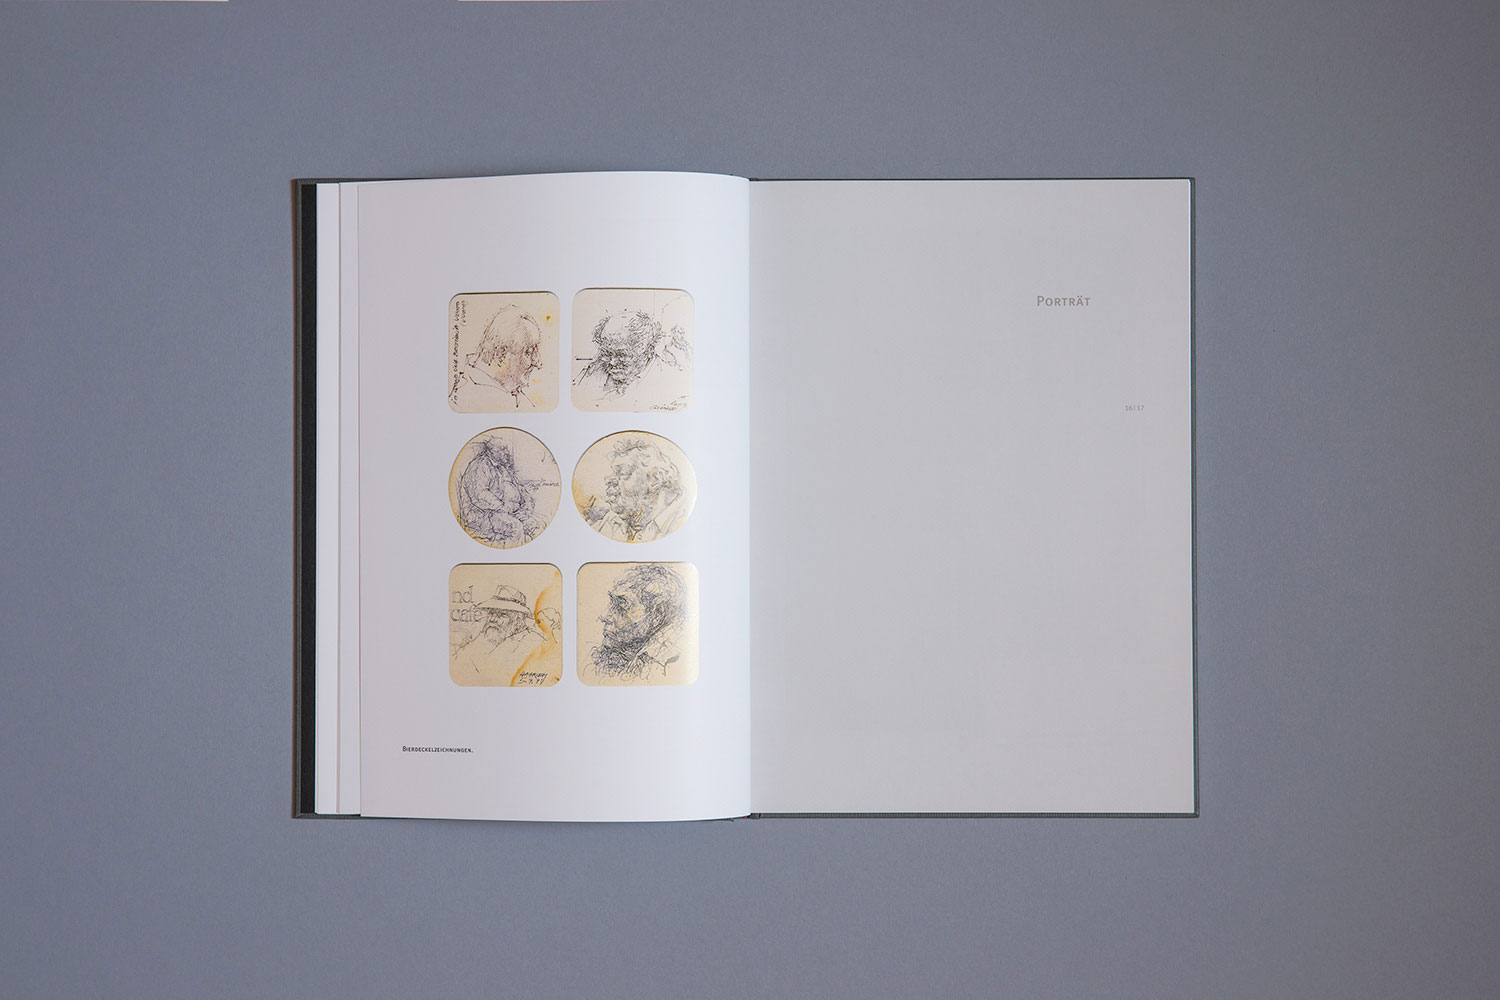 Kunstverein-Coburg-Katalog-Wilhelm-Schweizer-167-Wagner1972.jpg